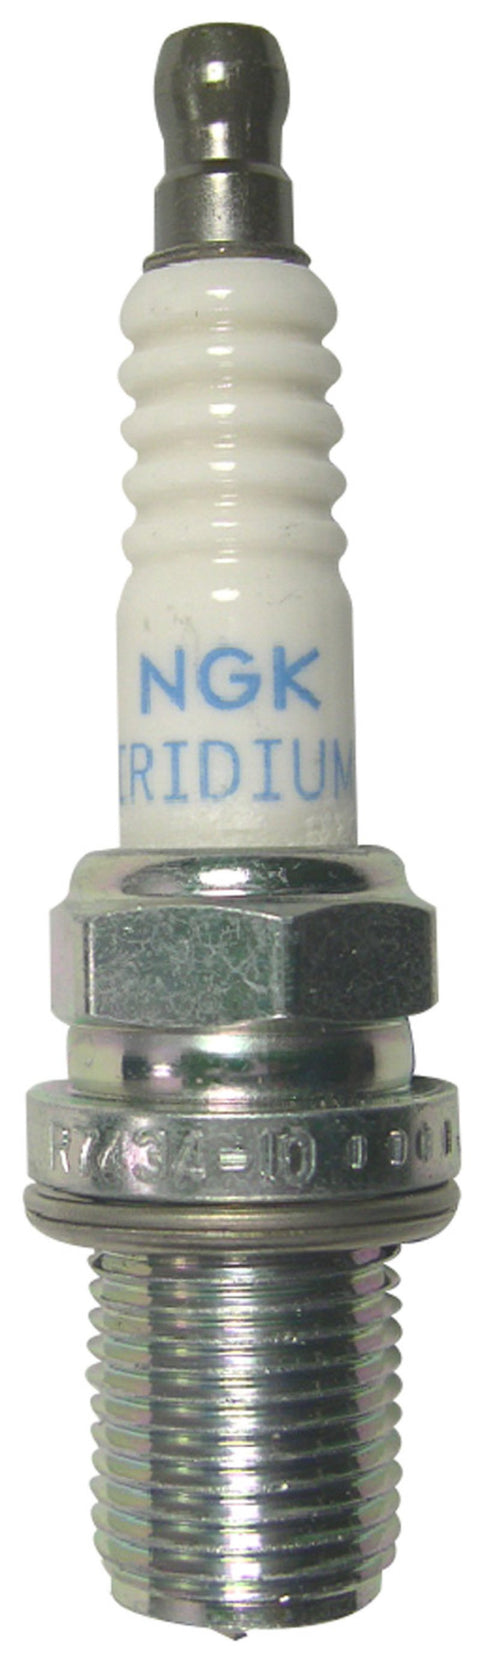 NGK Racing Spark Plug Box of 4 (4894)